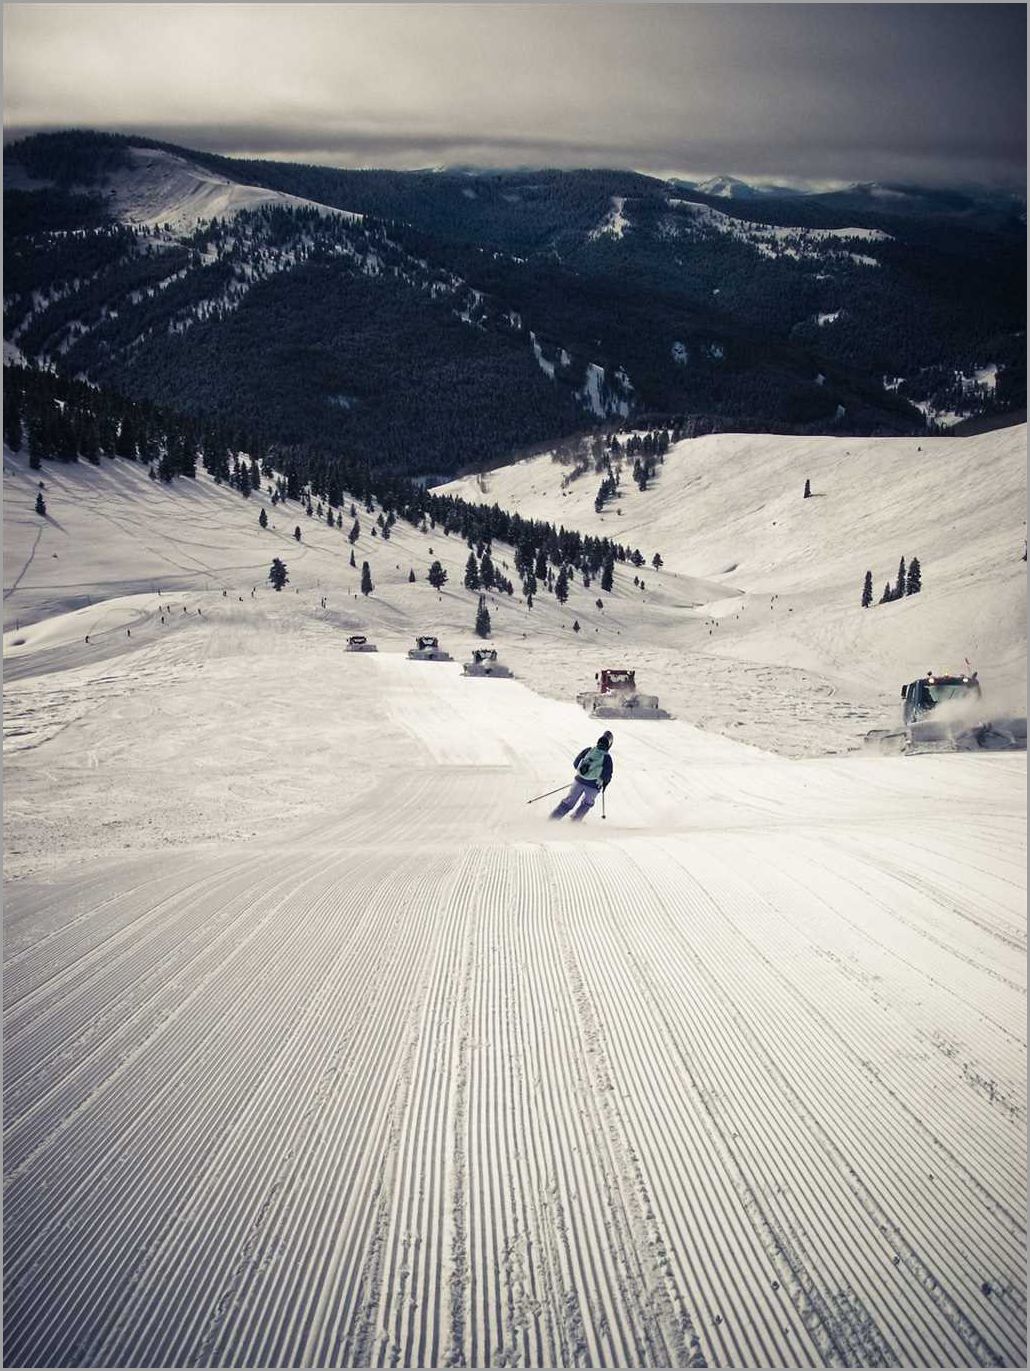 Opening Dates of Colorado Ski Resorts